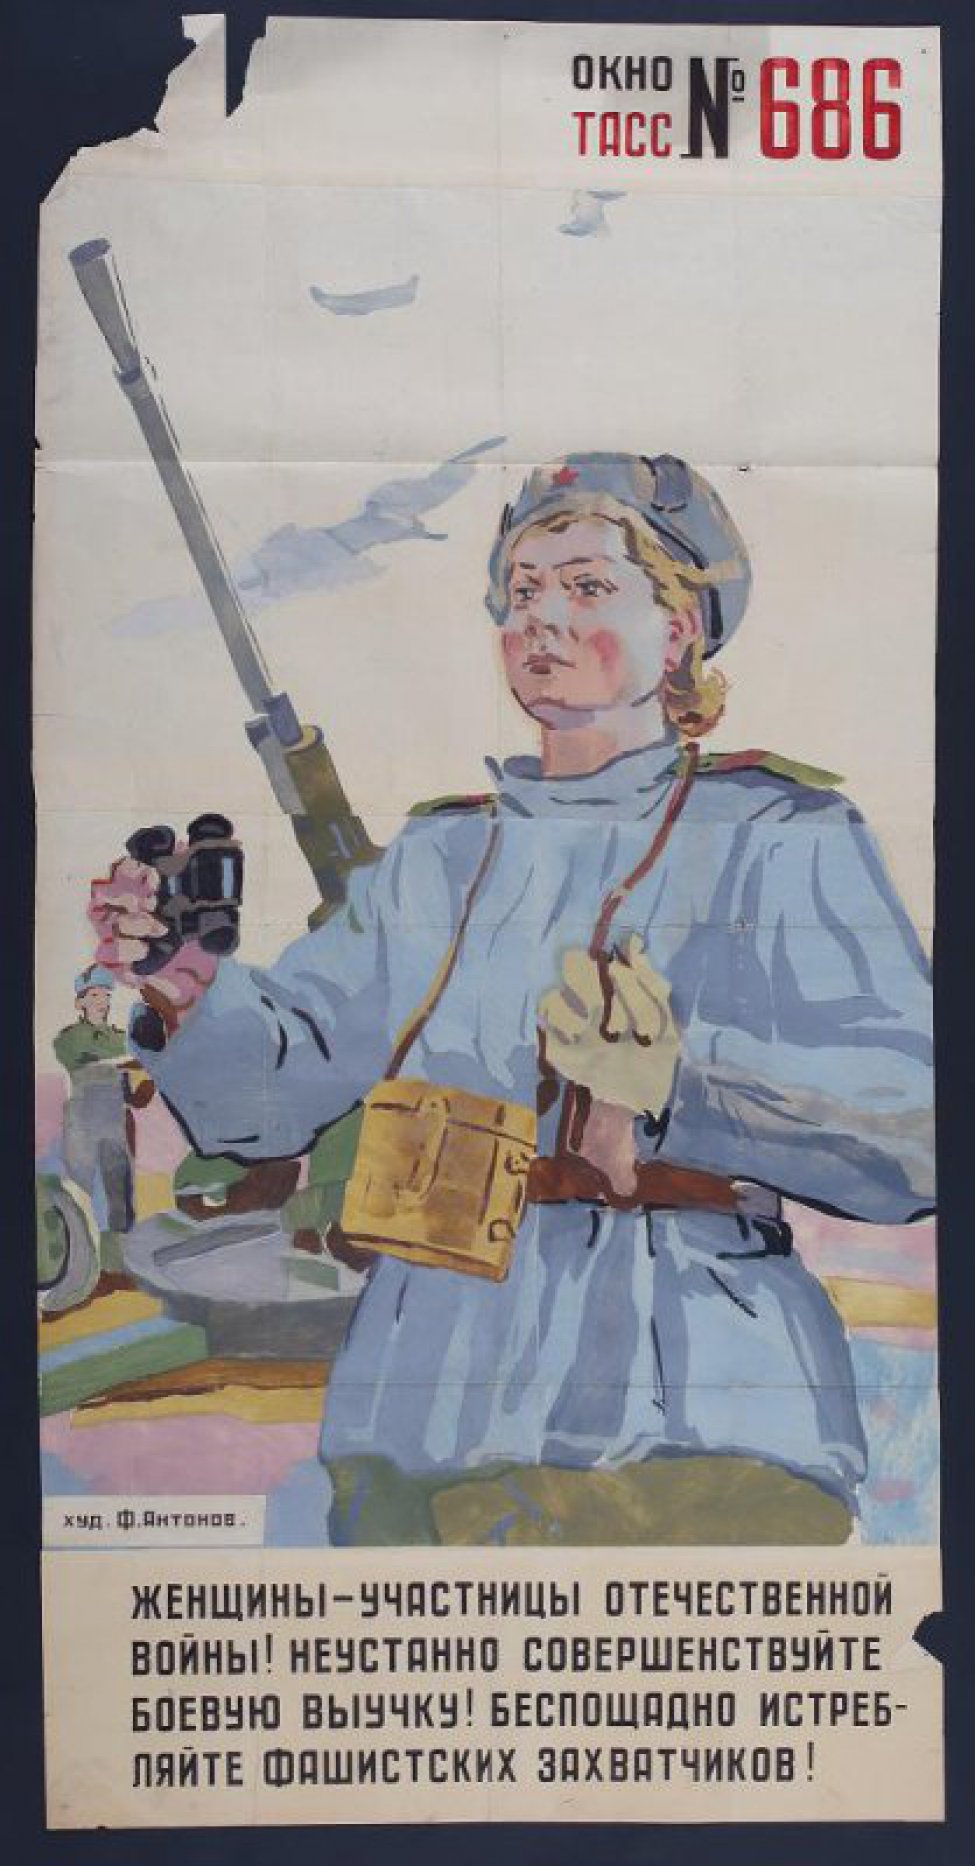 Изображена женщина- воин Красной армии с биноклем в правой руке на фоне зенитной пушки, текст:" Женщины- участницы Отечественной войны!..."